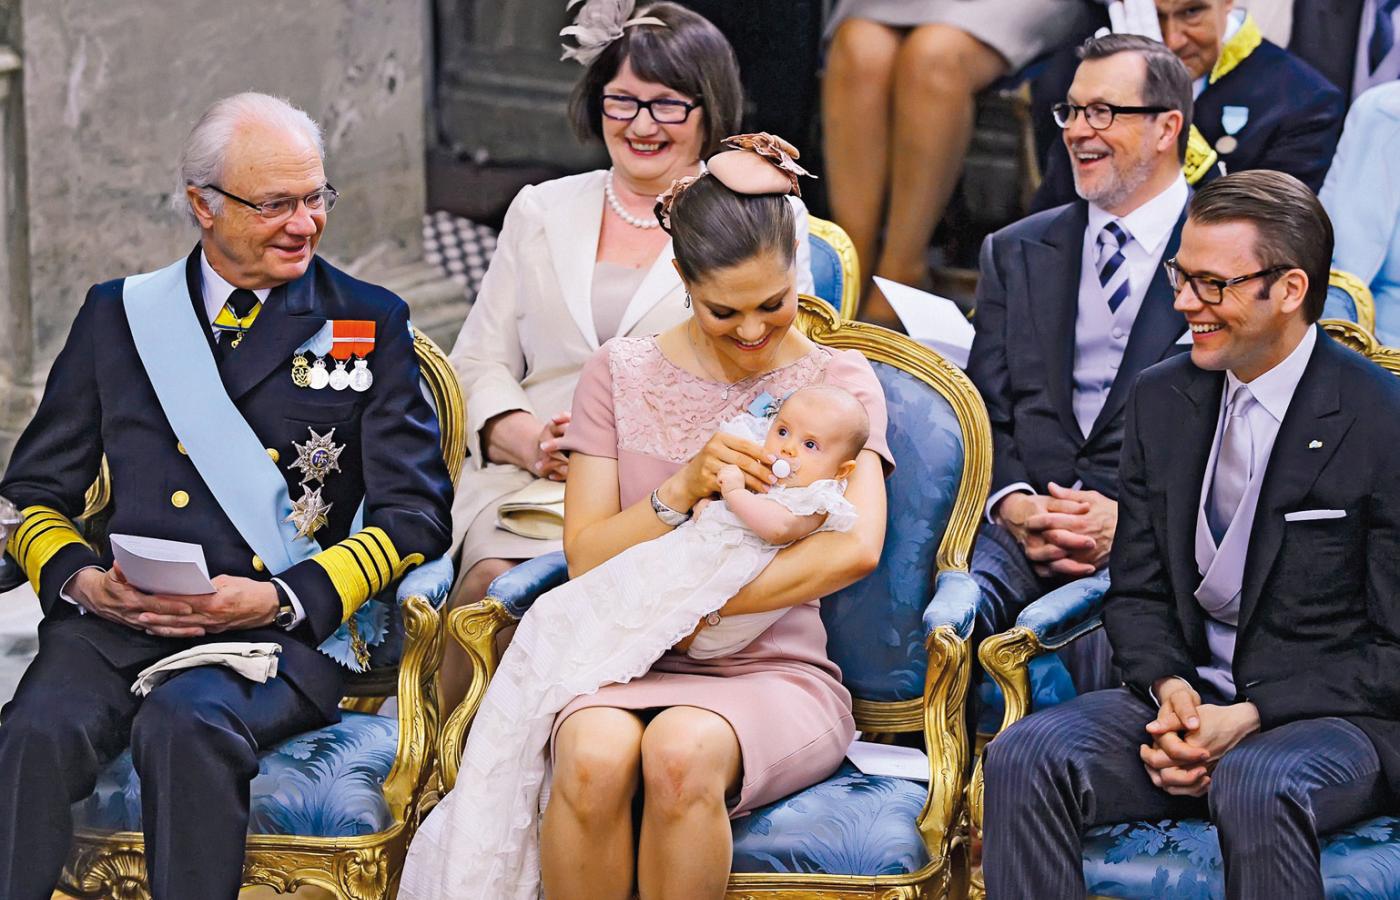 Szwedzka rodzina królewska, na pierwszym planie król Karol XVI Gustaw, księżniczka Wiktoria z córeczką Estellą i mężem Danielem.